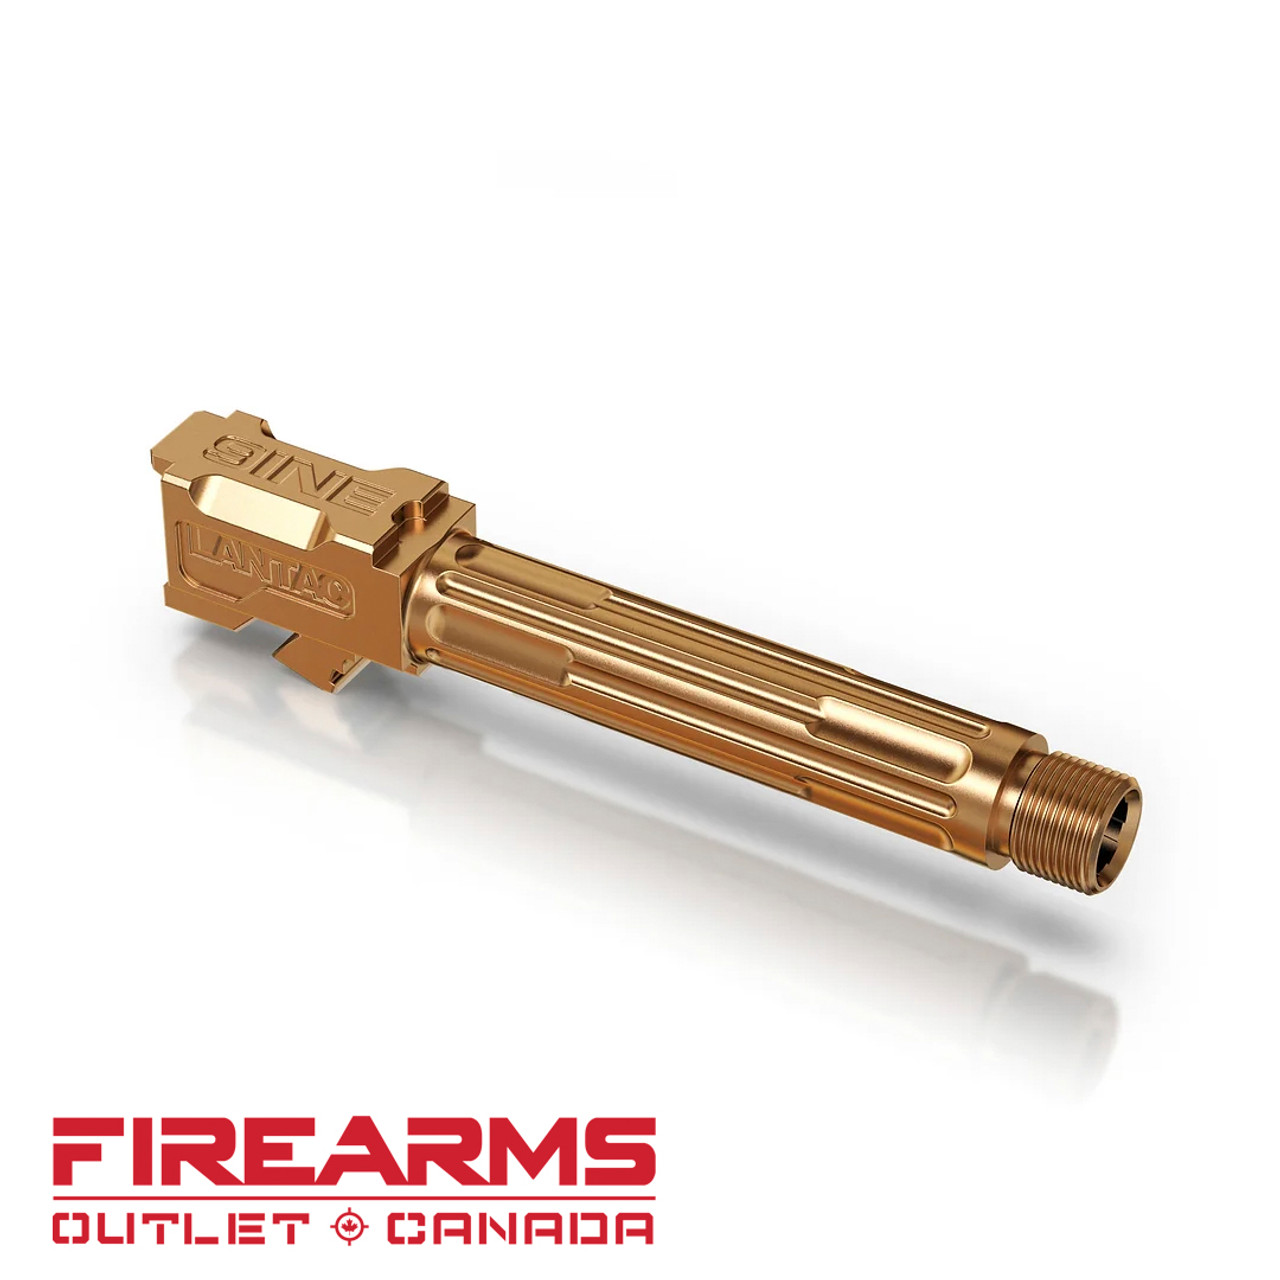 Lantac 9INE - Gold TiN, Threaded Barrel  For Glock 19 Gen 3/4 [01-GB-G19-TH-BRNZ]